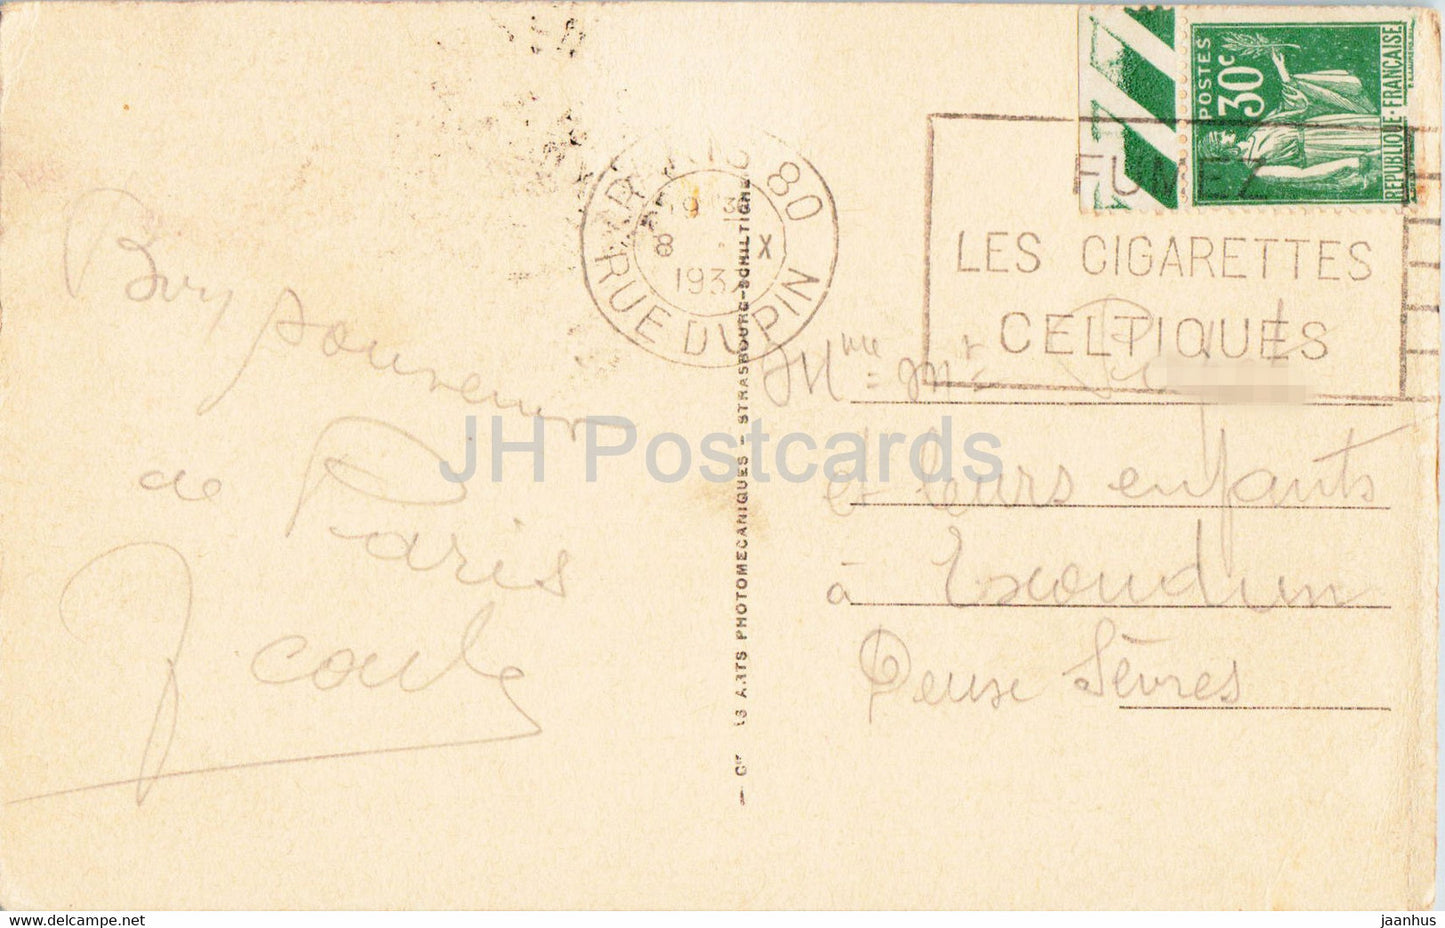 Paris - L'Arc de Triomphe du Carrousel - 72 - old postcard - 1937 - France - used